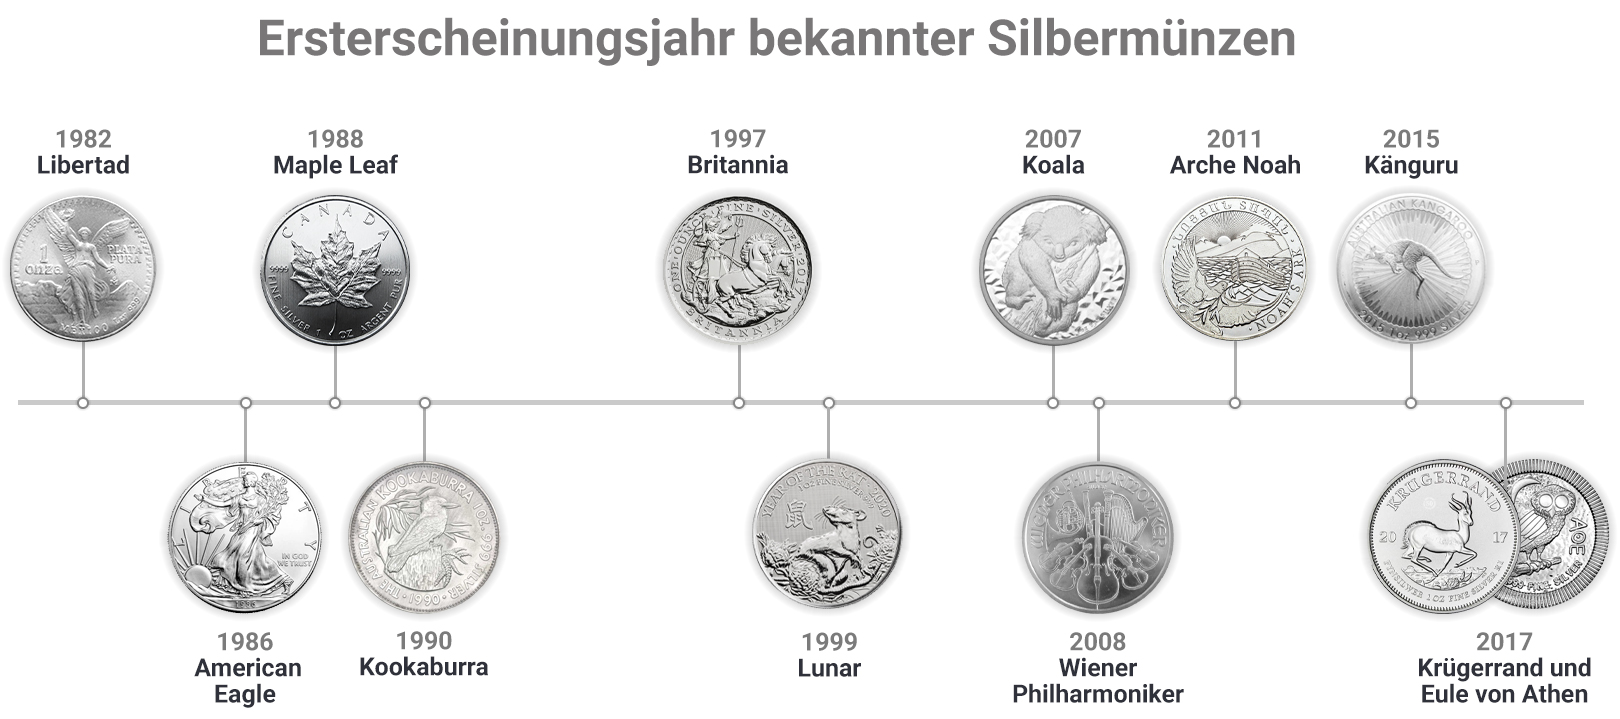 Ersterscheinungsjahr bekannter Silbermünzen